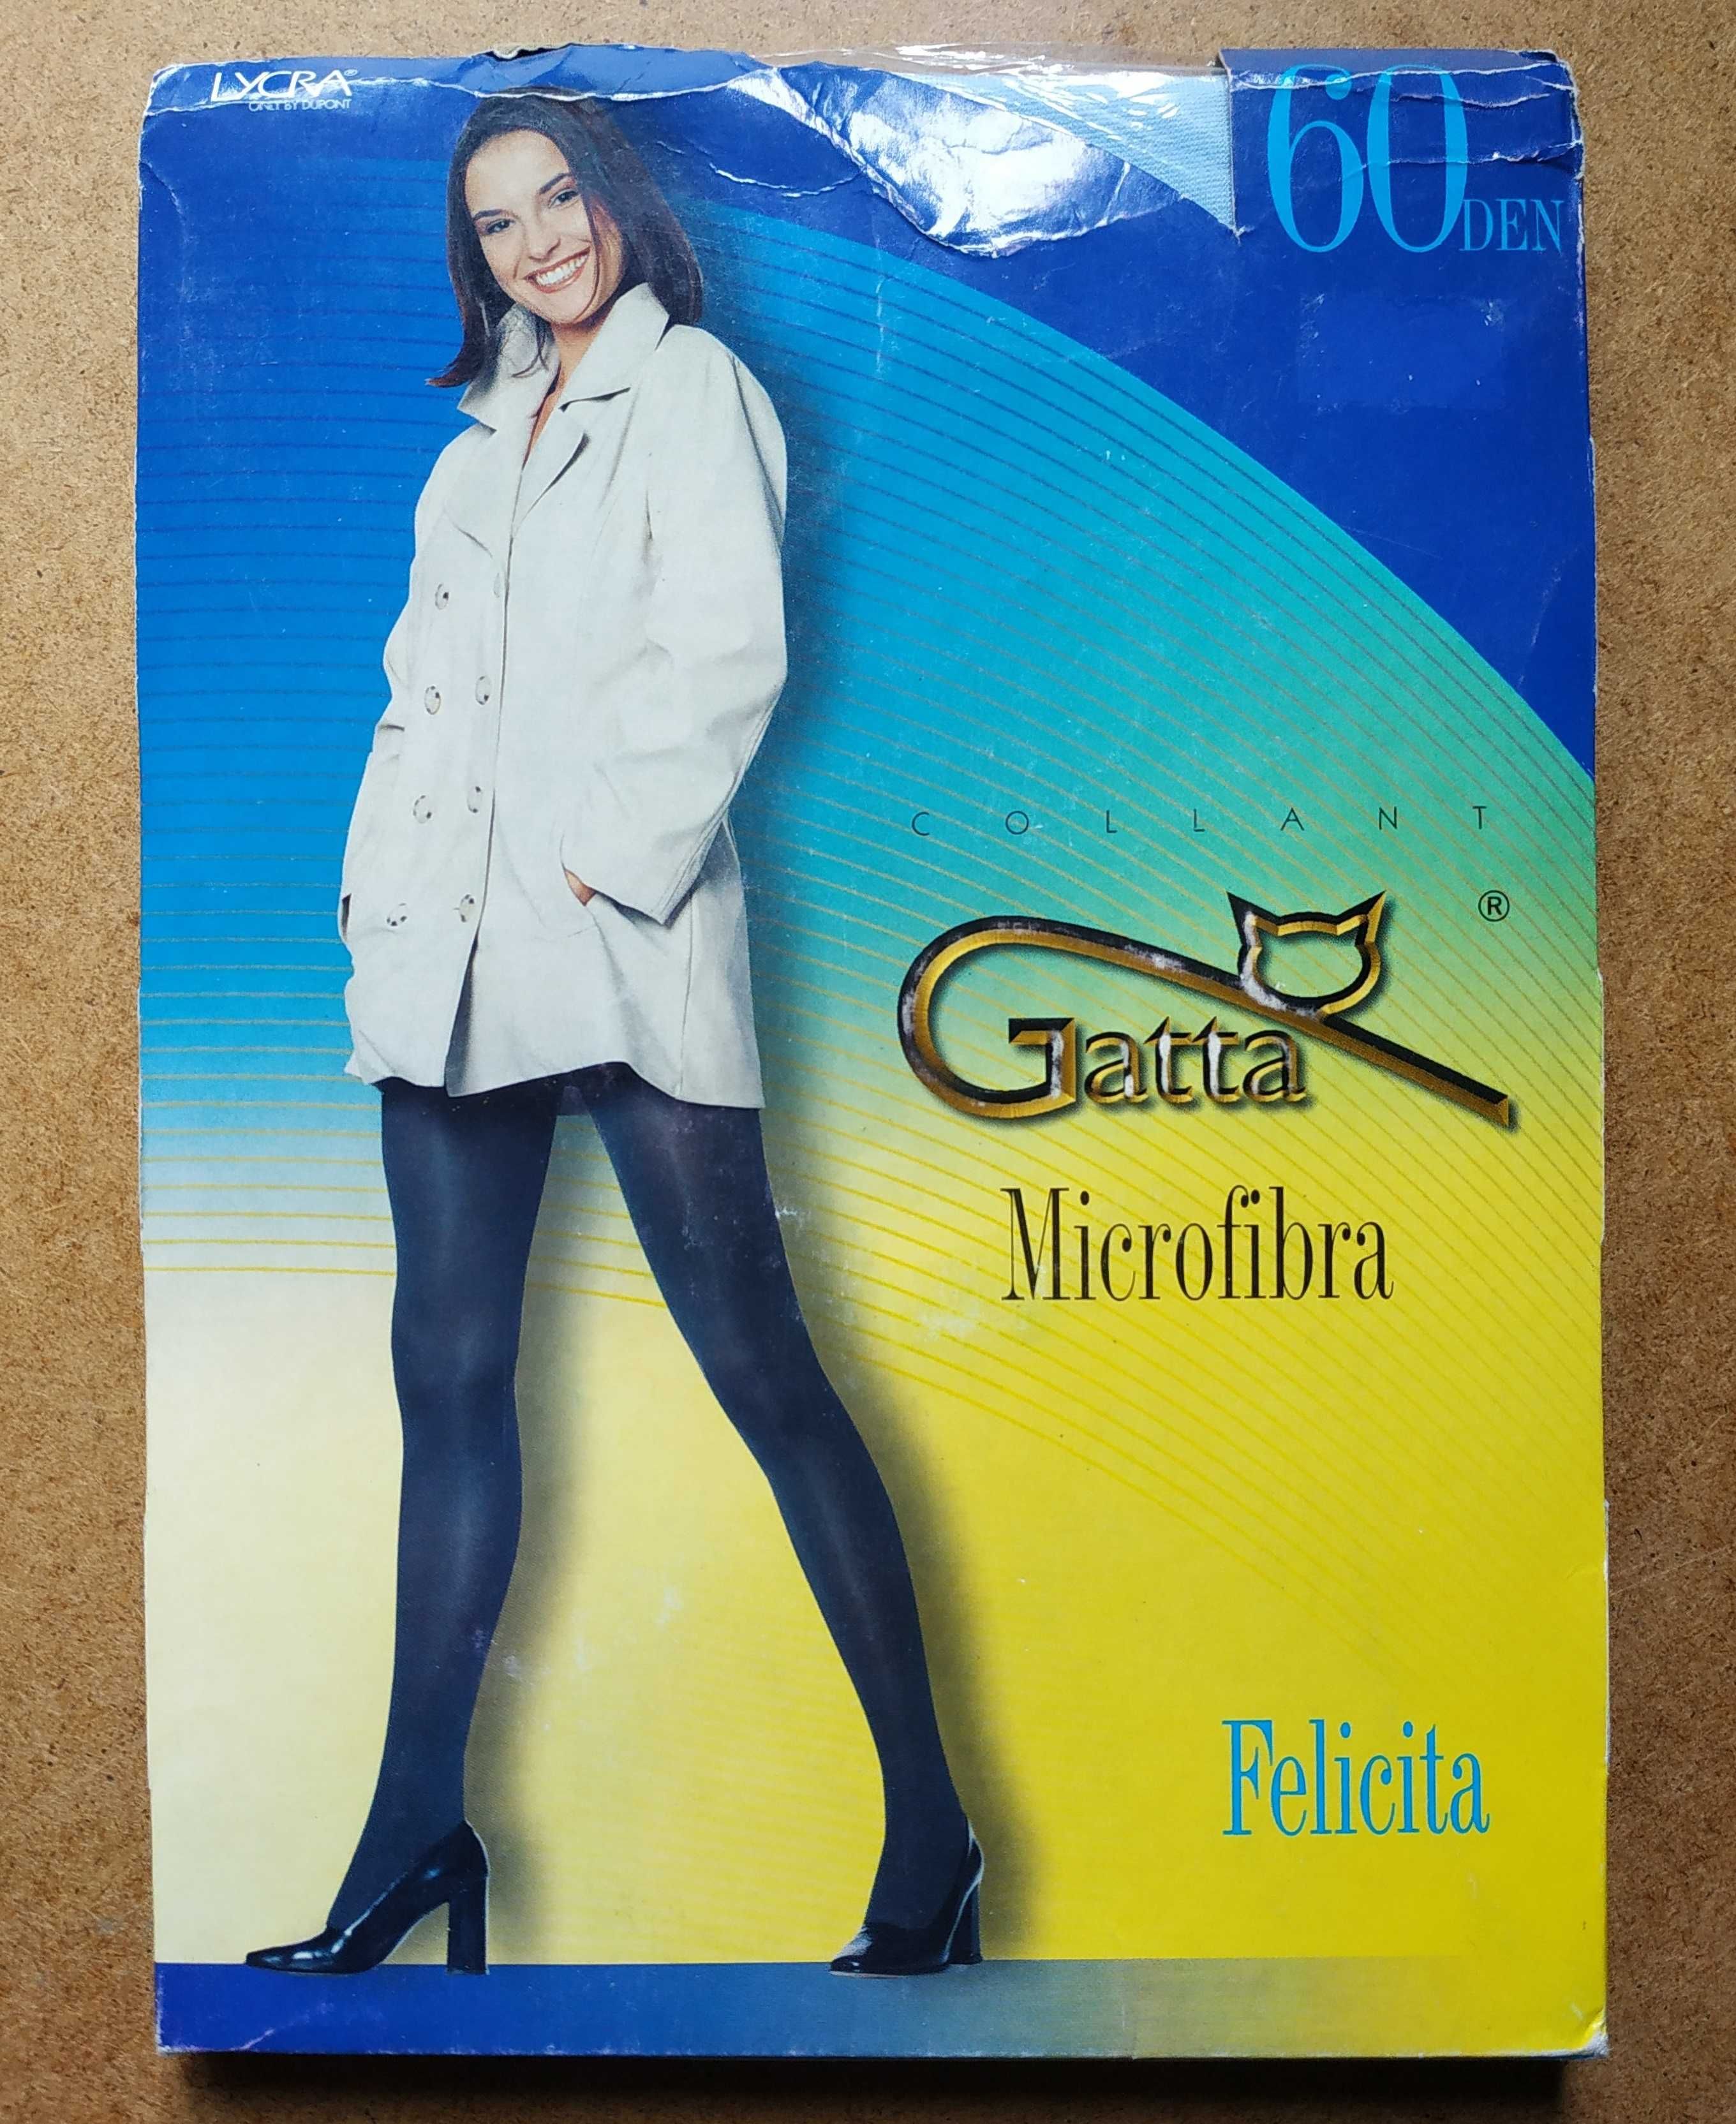 Распродажа! Цветные колготки Gatta microfibra Felicita 60 den 2 размер